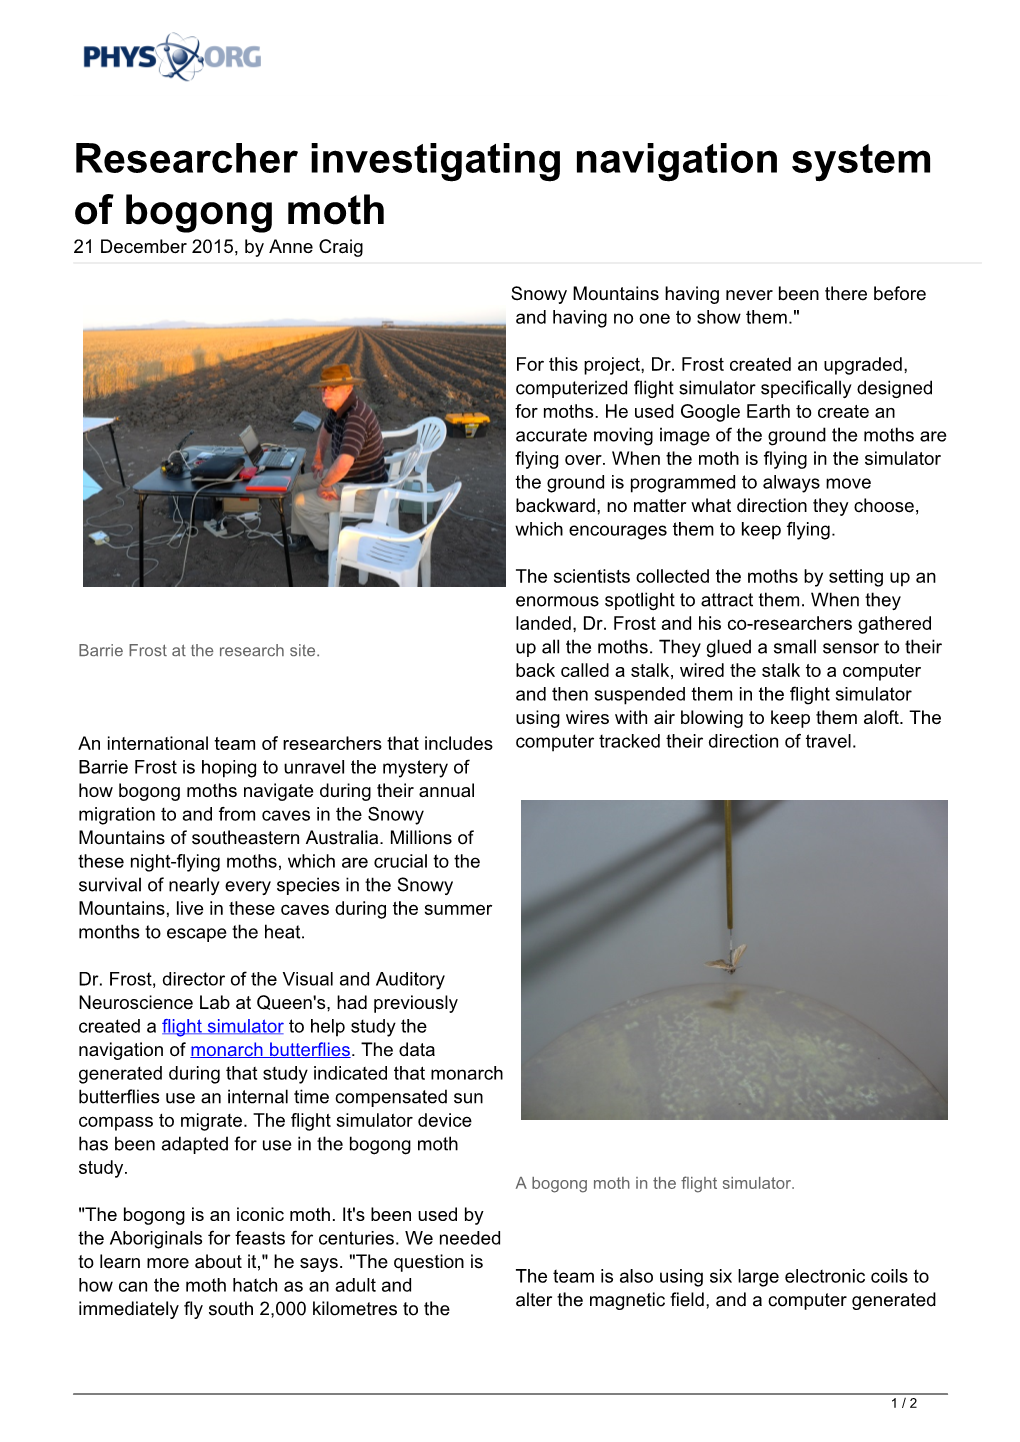 Researcher Investigating Navigation System of Bogong Moth 21 December 2015, by Anne Craig